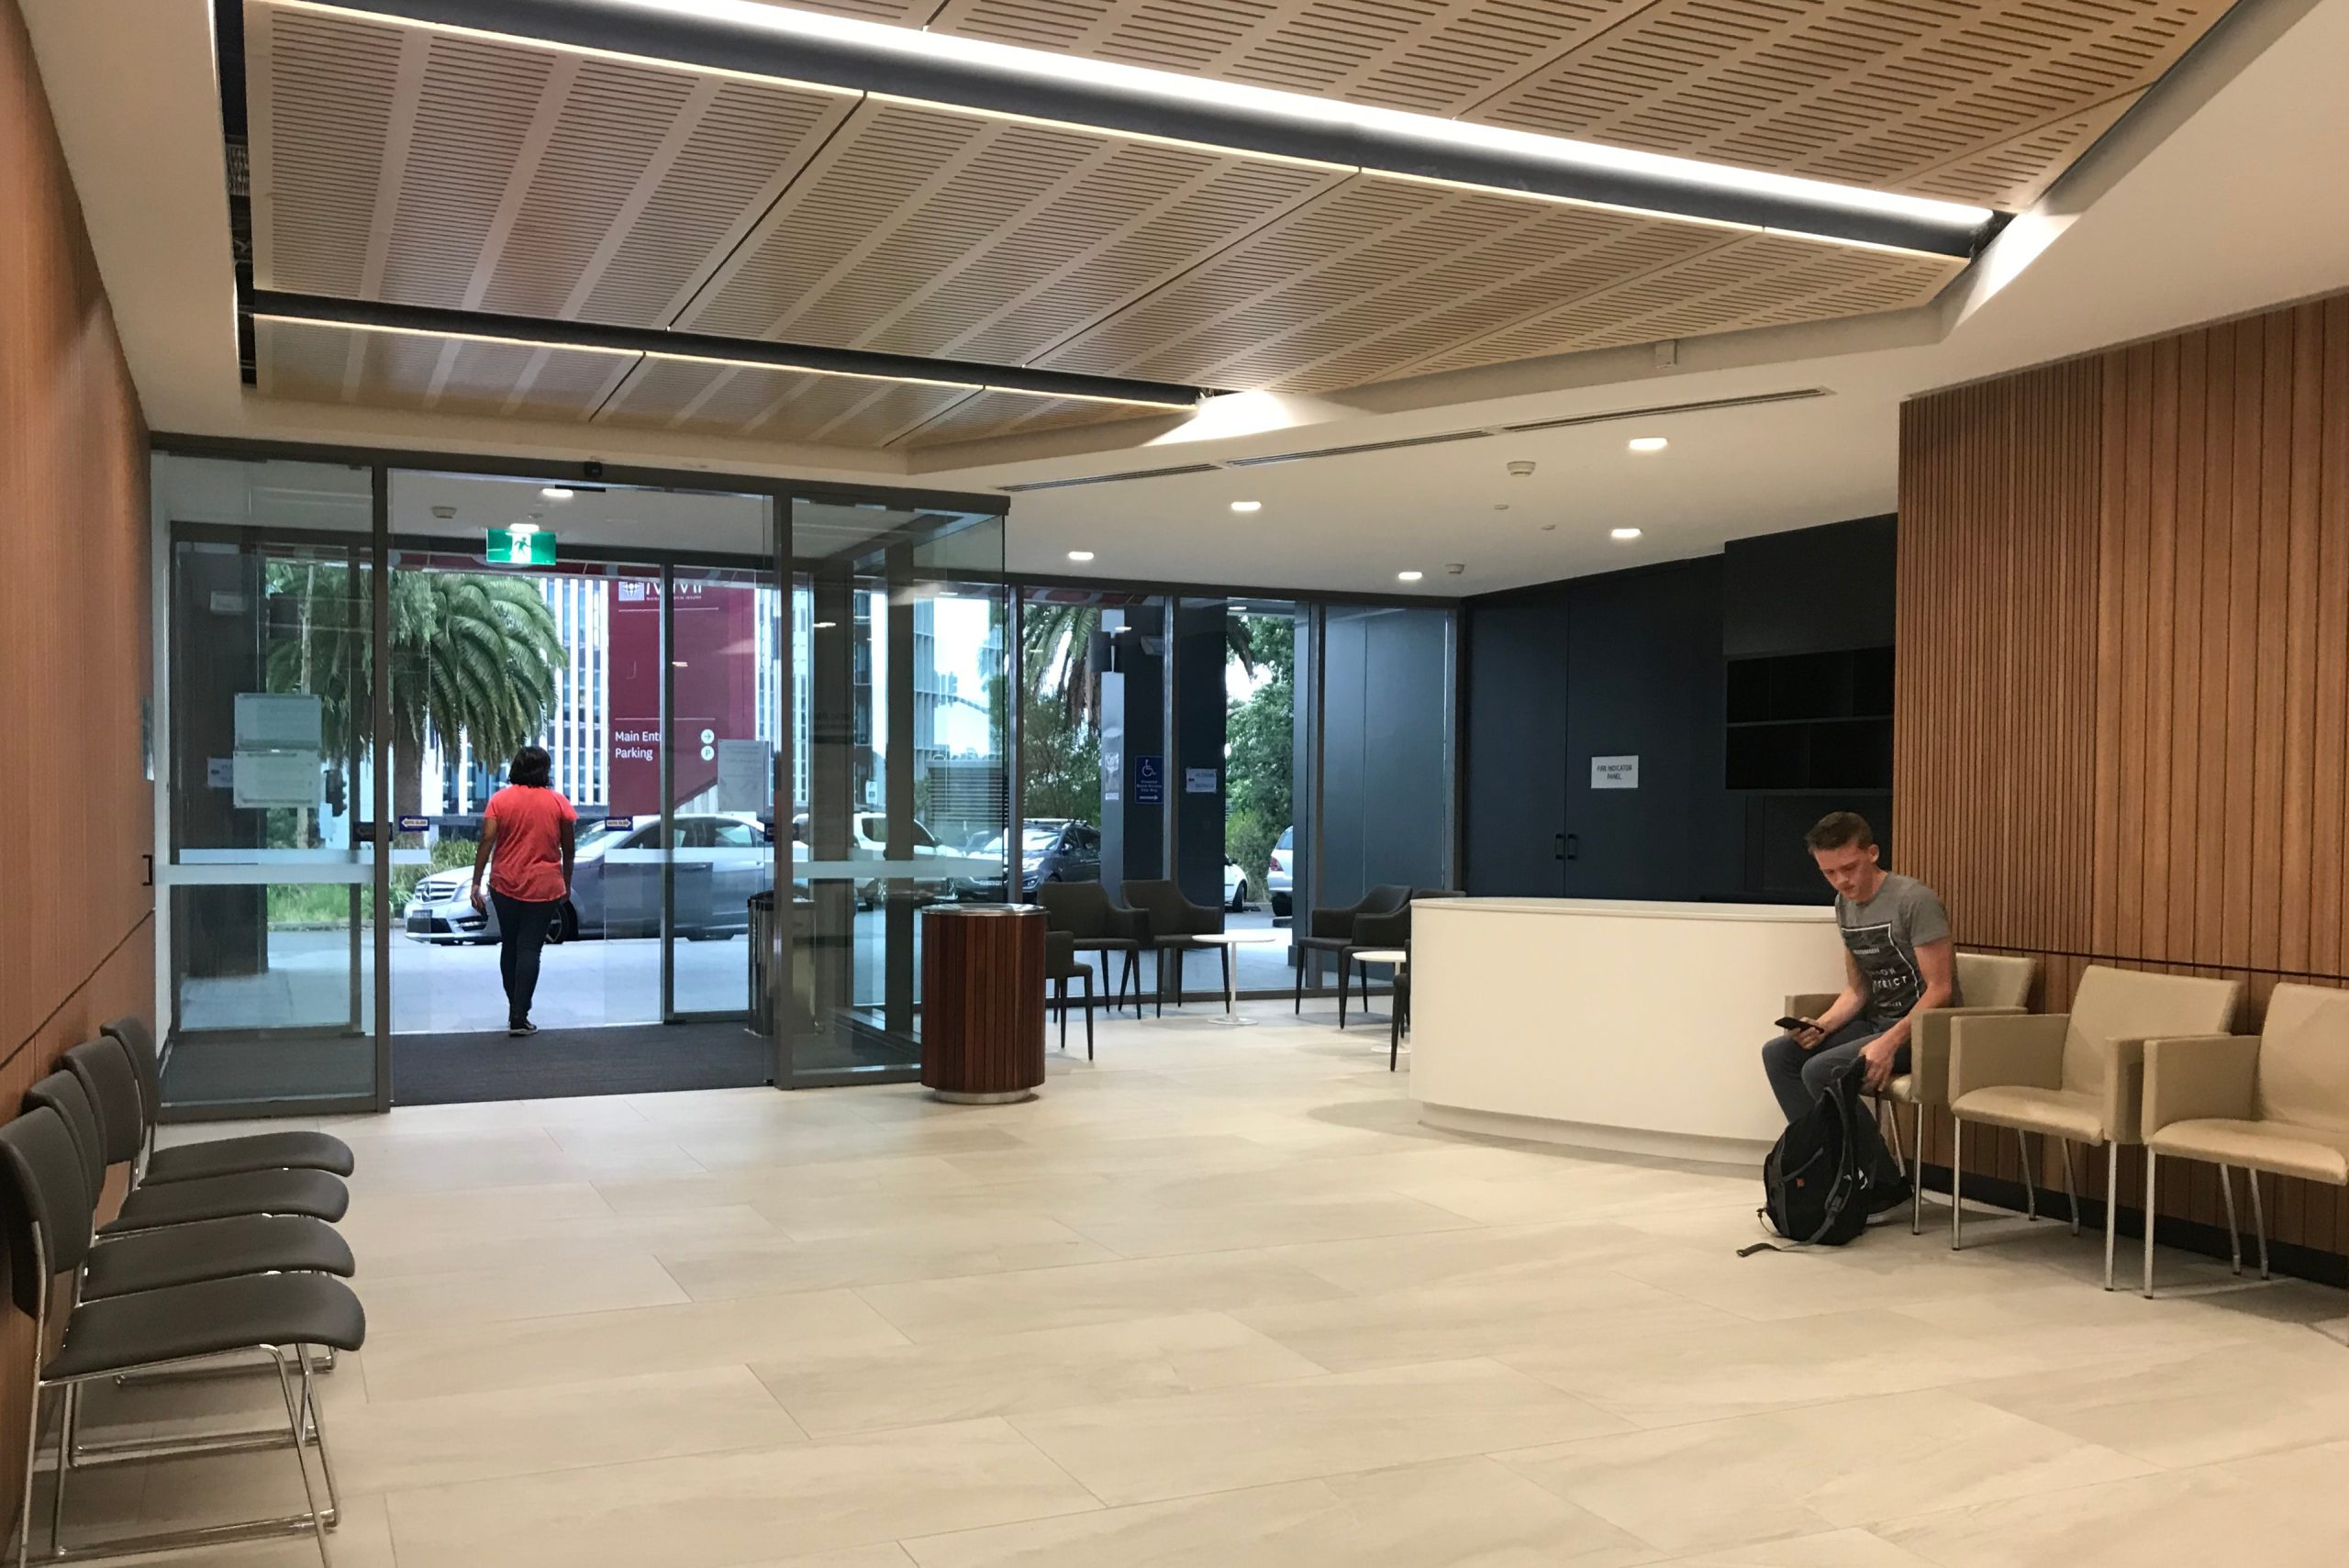 1 building entrance macquarie university f10a taylor construction education fitout